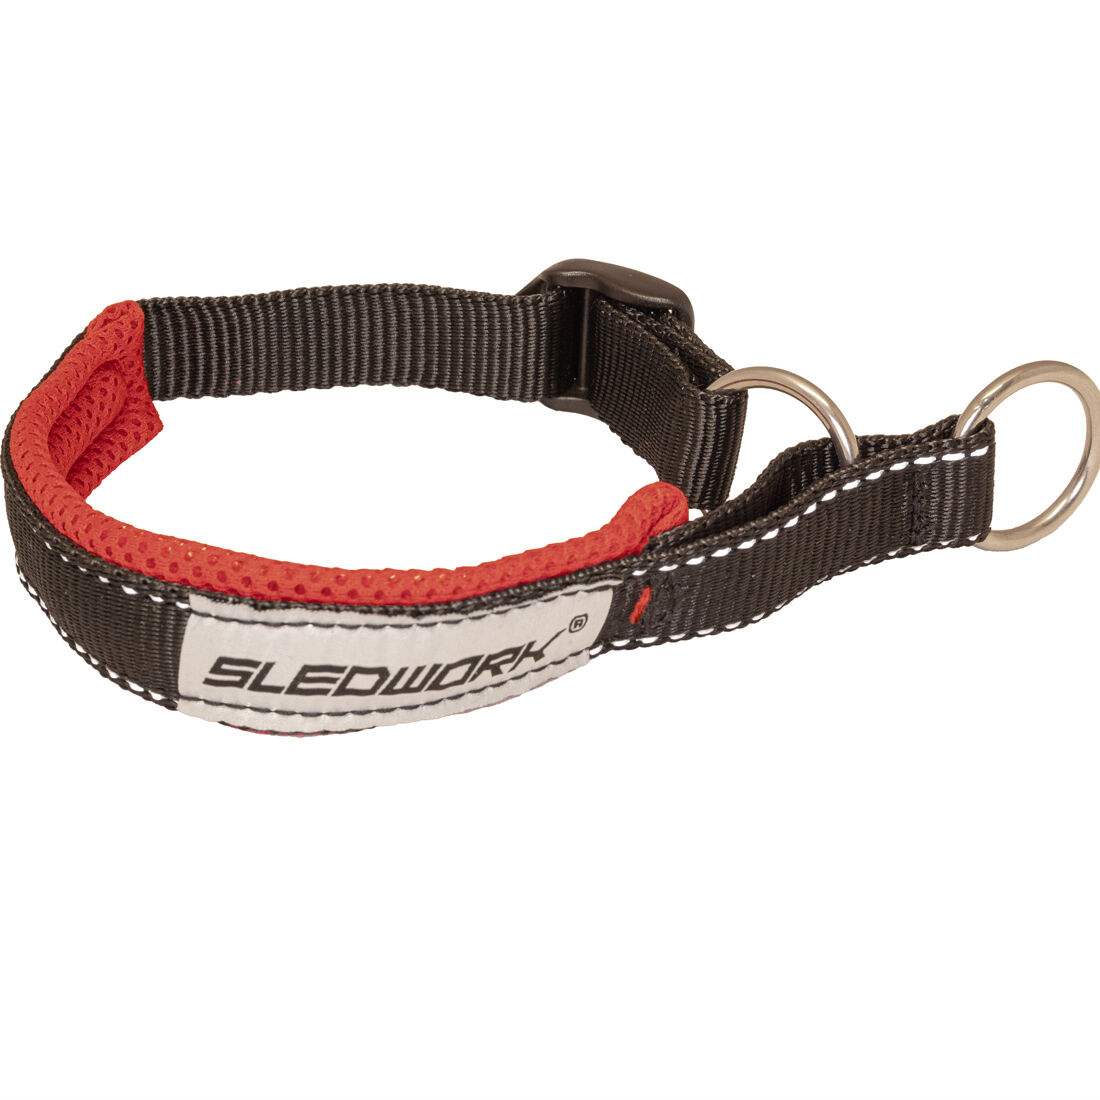 Sledwork-Halsband-Safety-Collar-Active-hundehalsband-leuchtend-54-30989